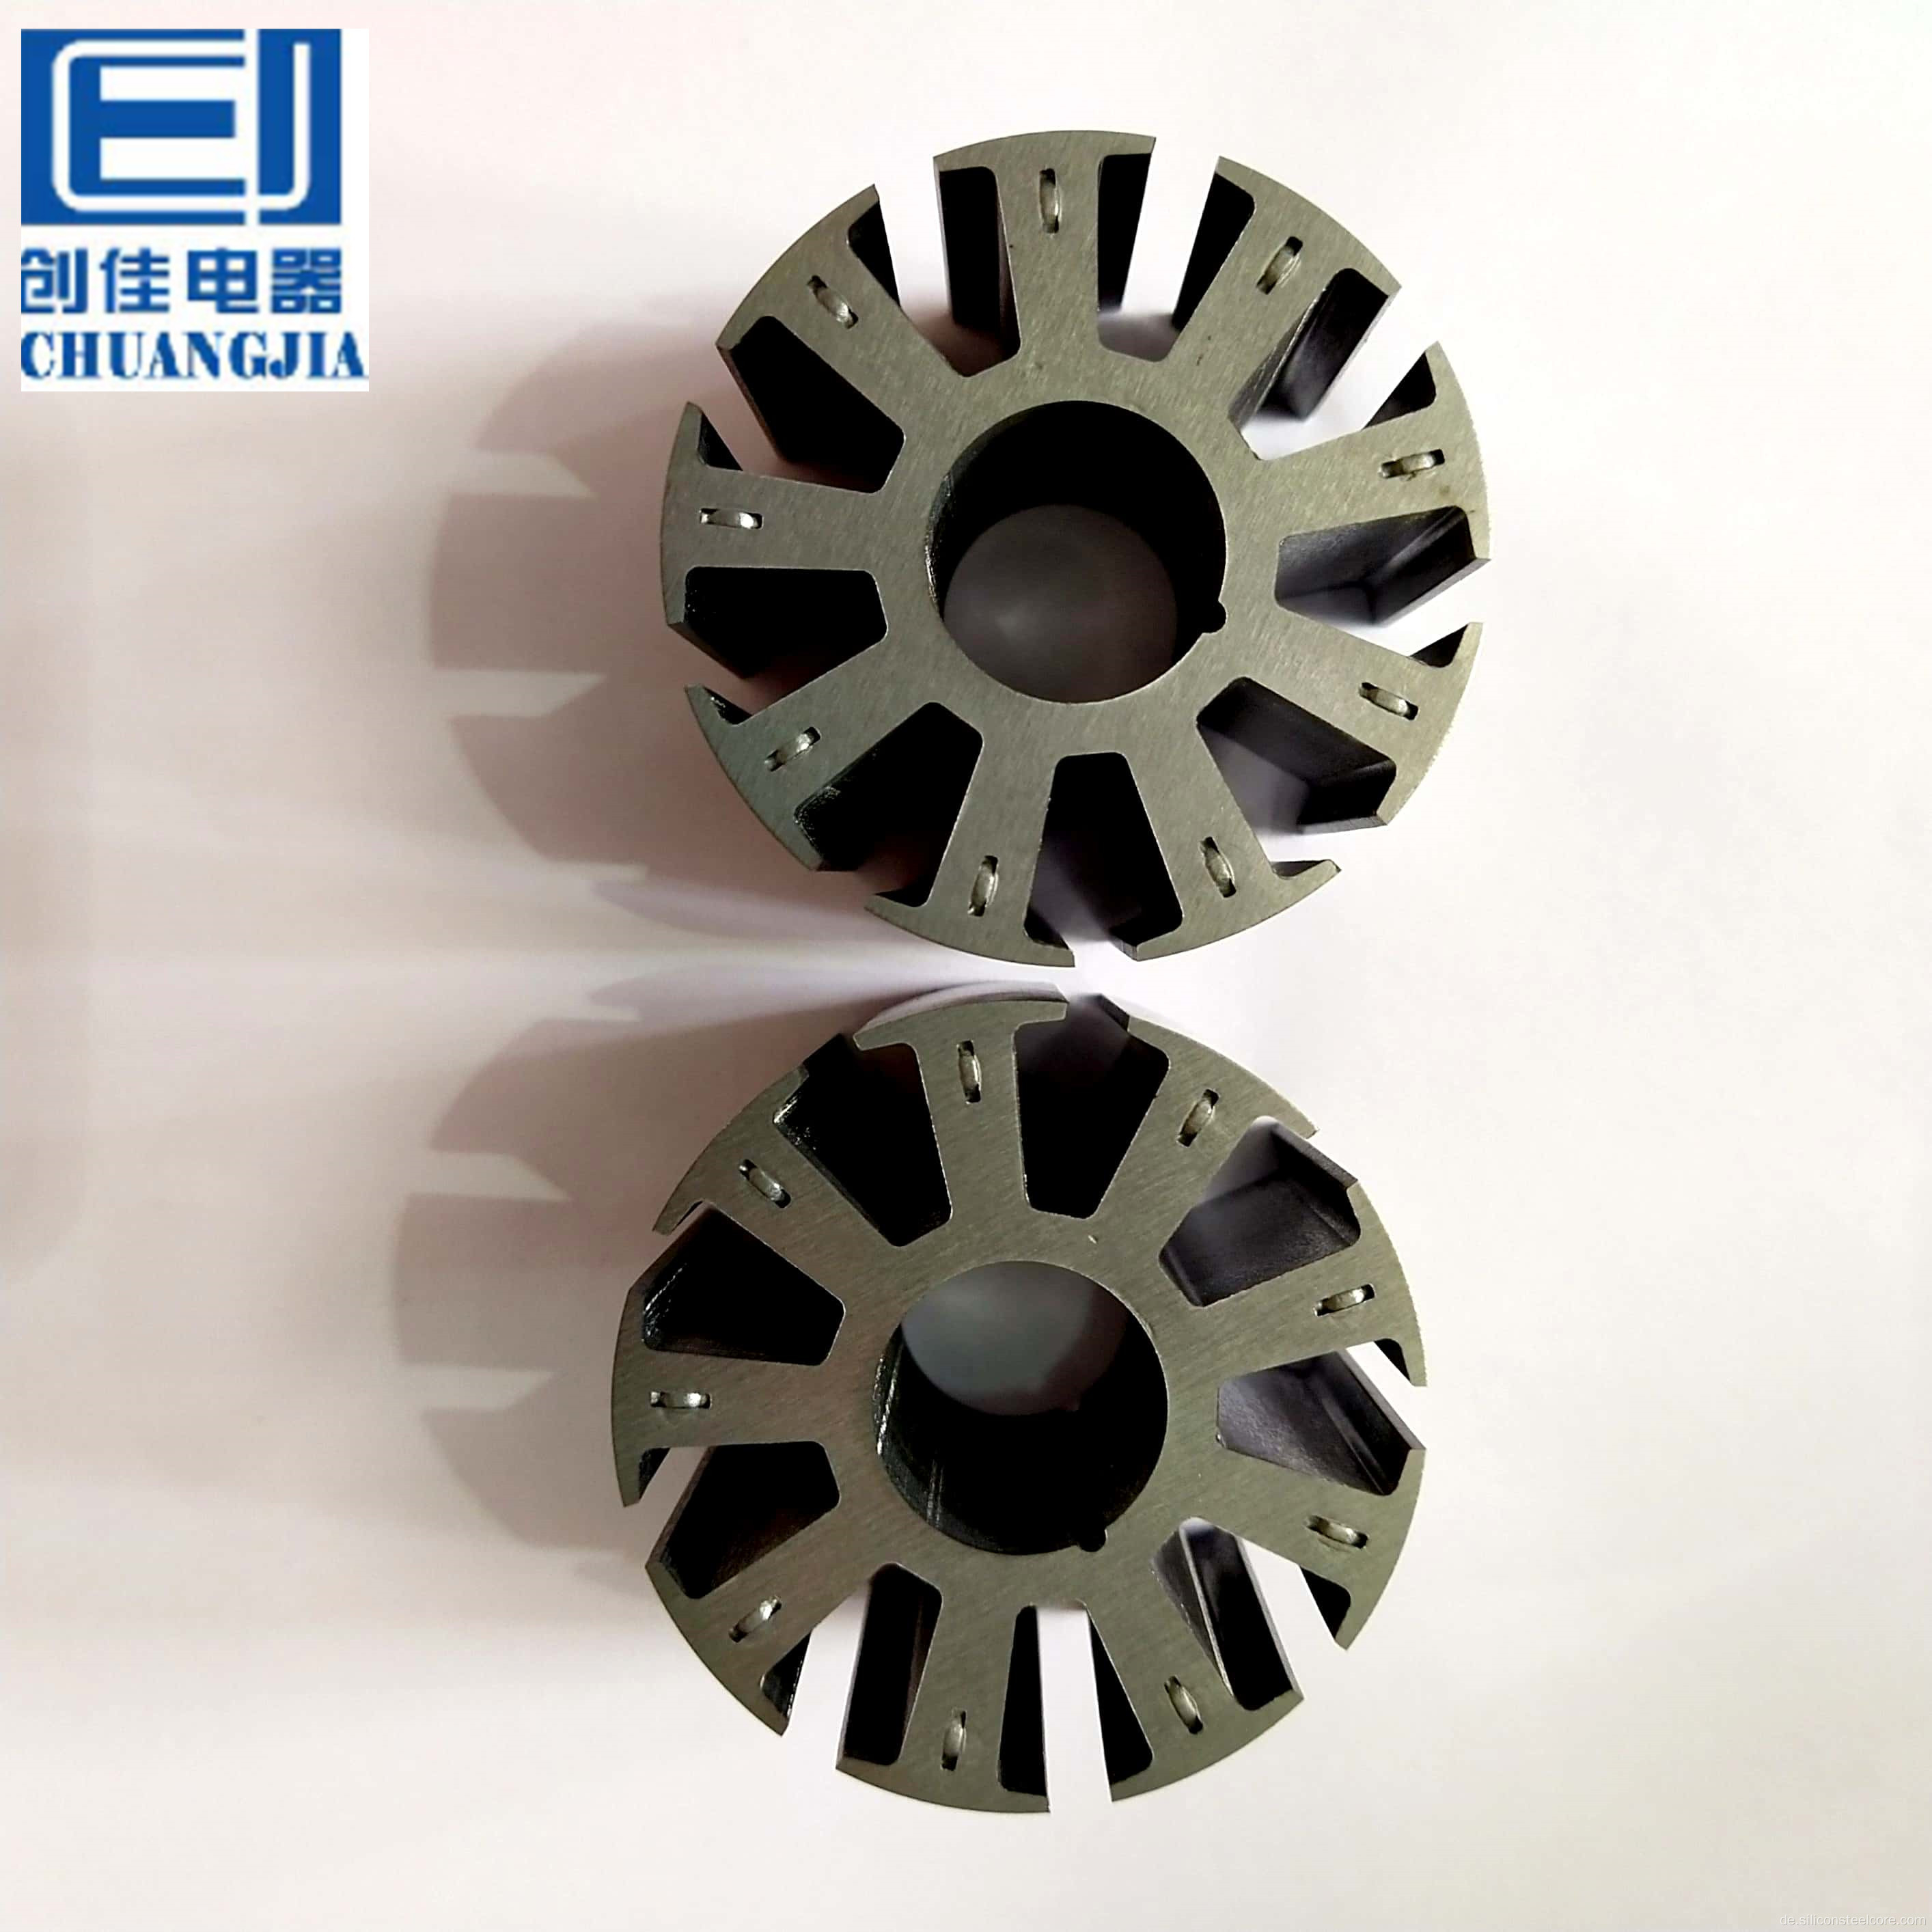 Chuang Jia weit verbreitete Automobilmotor -Rotor und Stator -Stahlkerngurte